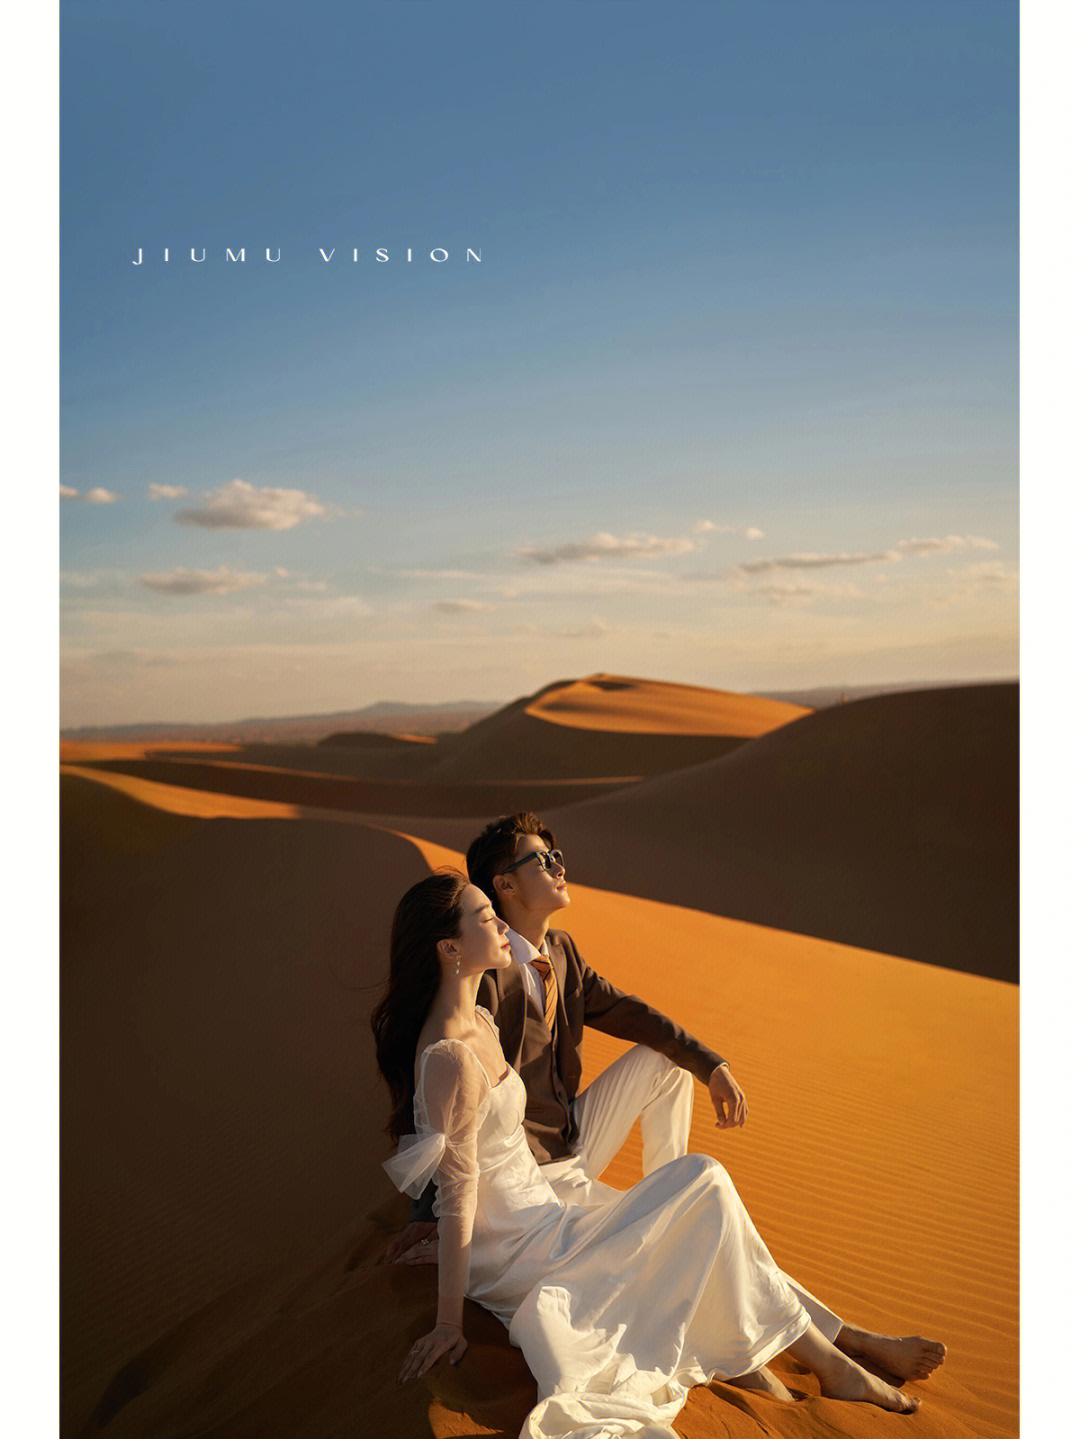 中卫婚纱照不一样的沙漠旅拍婚纱照穿越无人区 寻找绿洲 看到不一样的